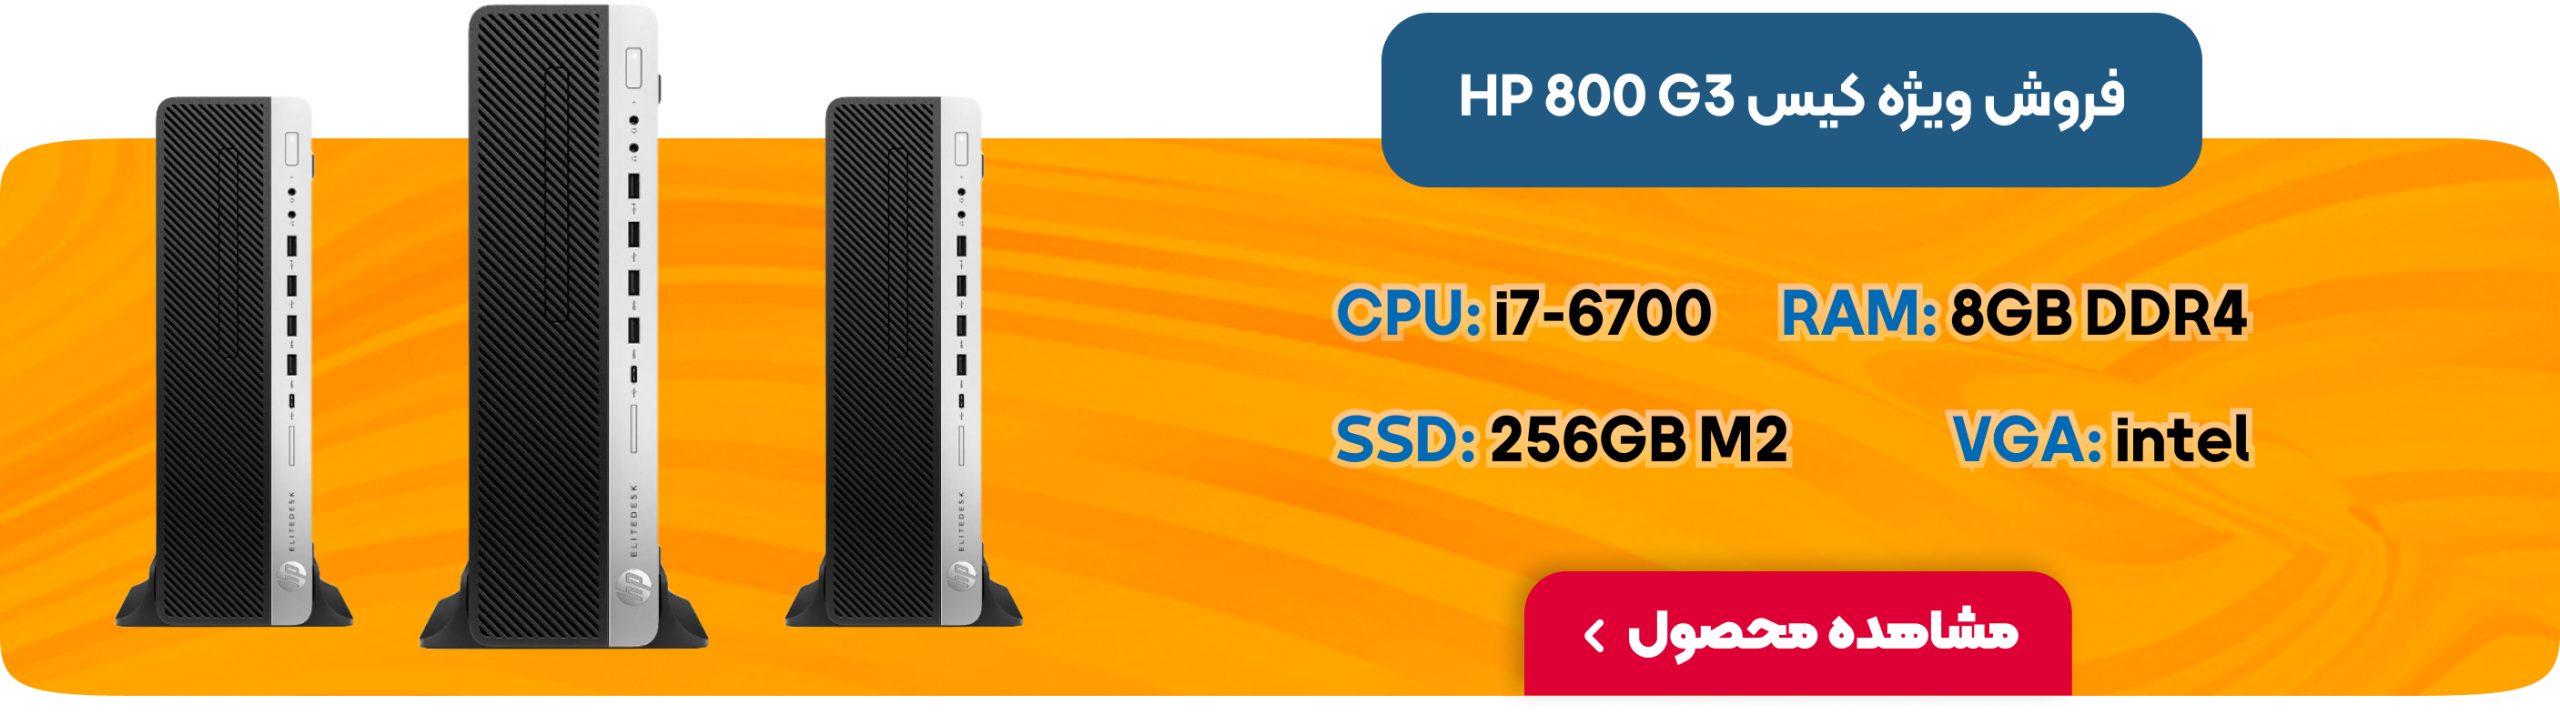 فروش ویژه کیس HP 800 G3